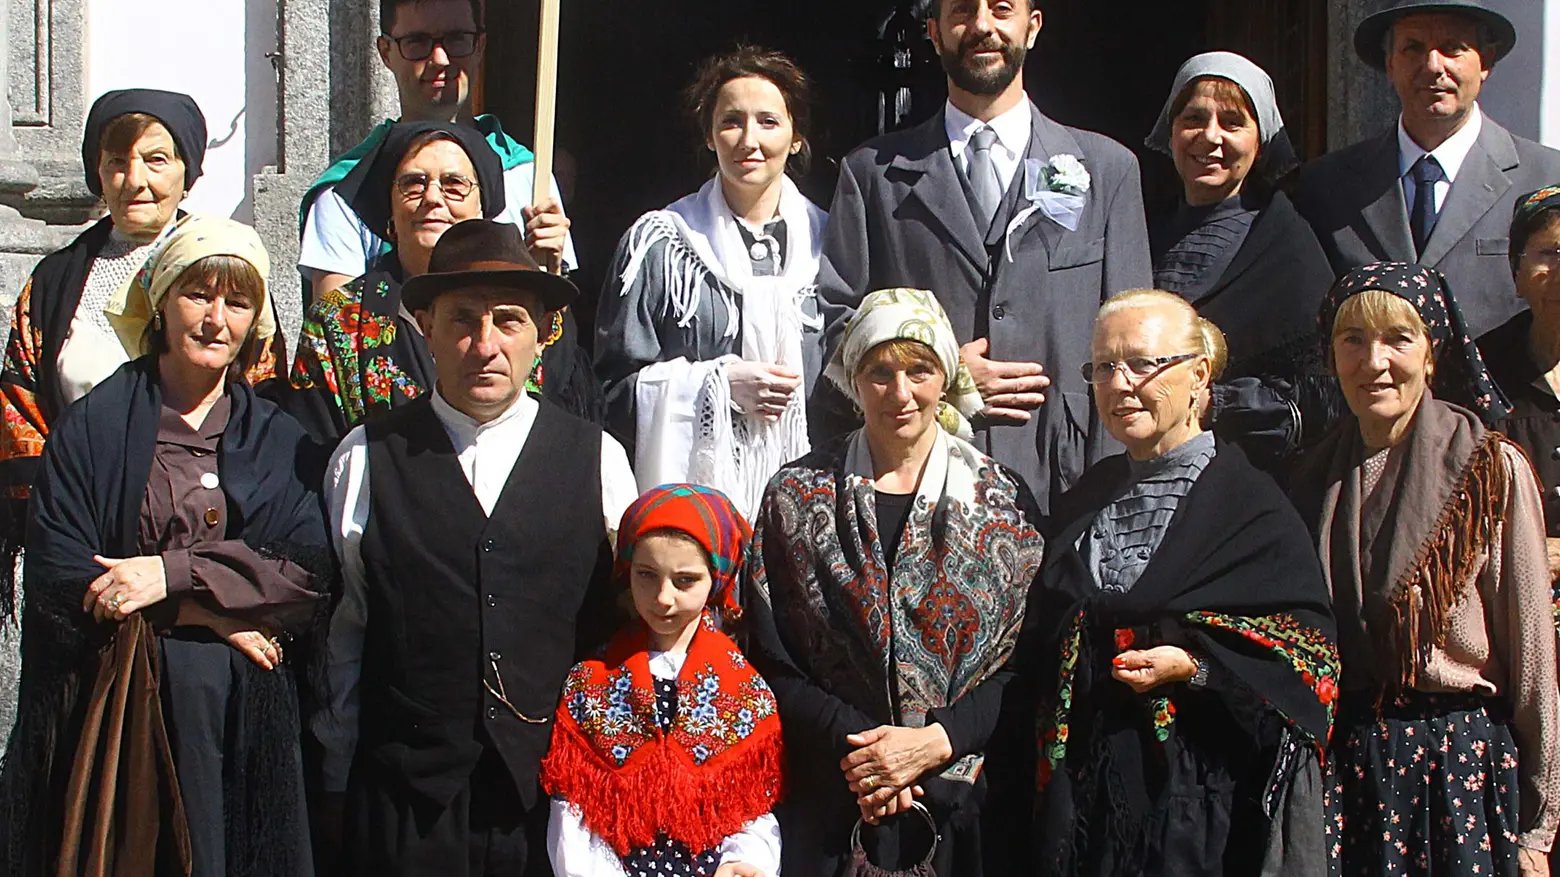 Sfilata ed esibizioni  per i gruppi folkloristici  in costume tradizionale